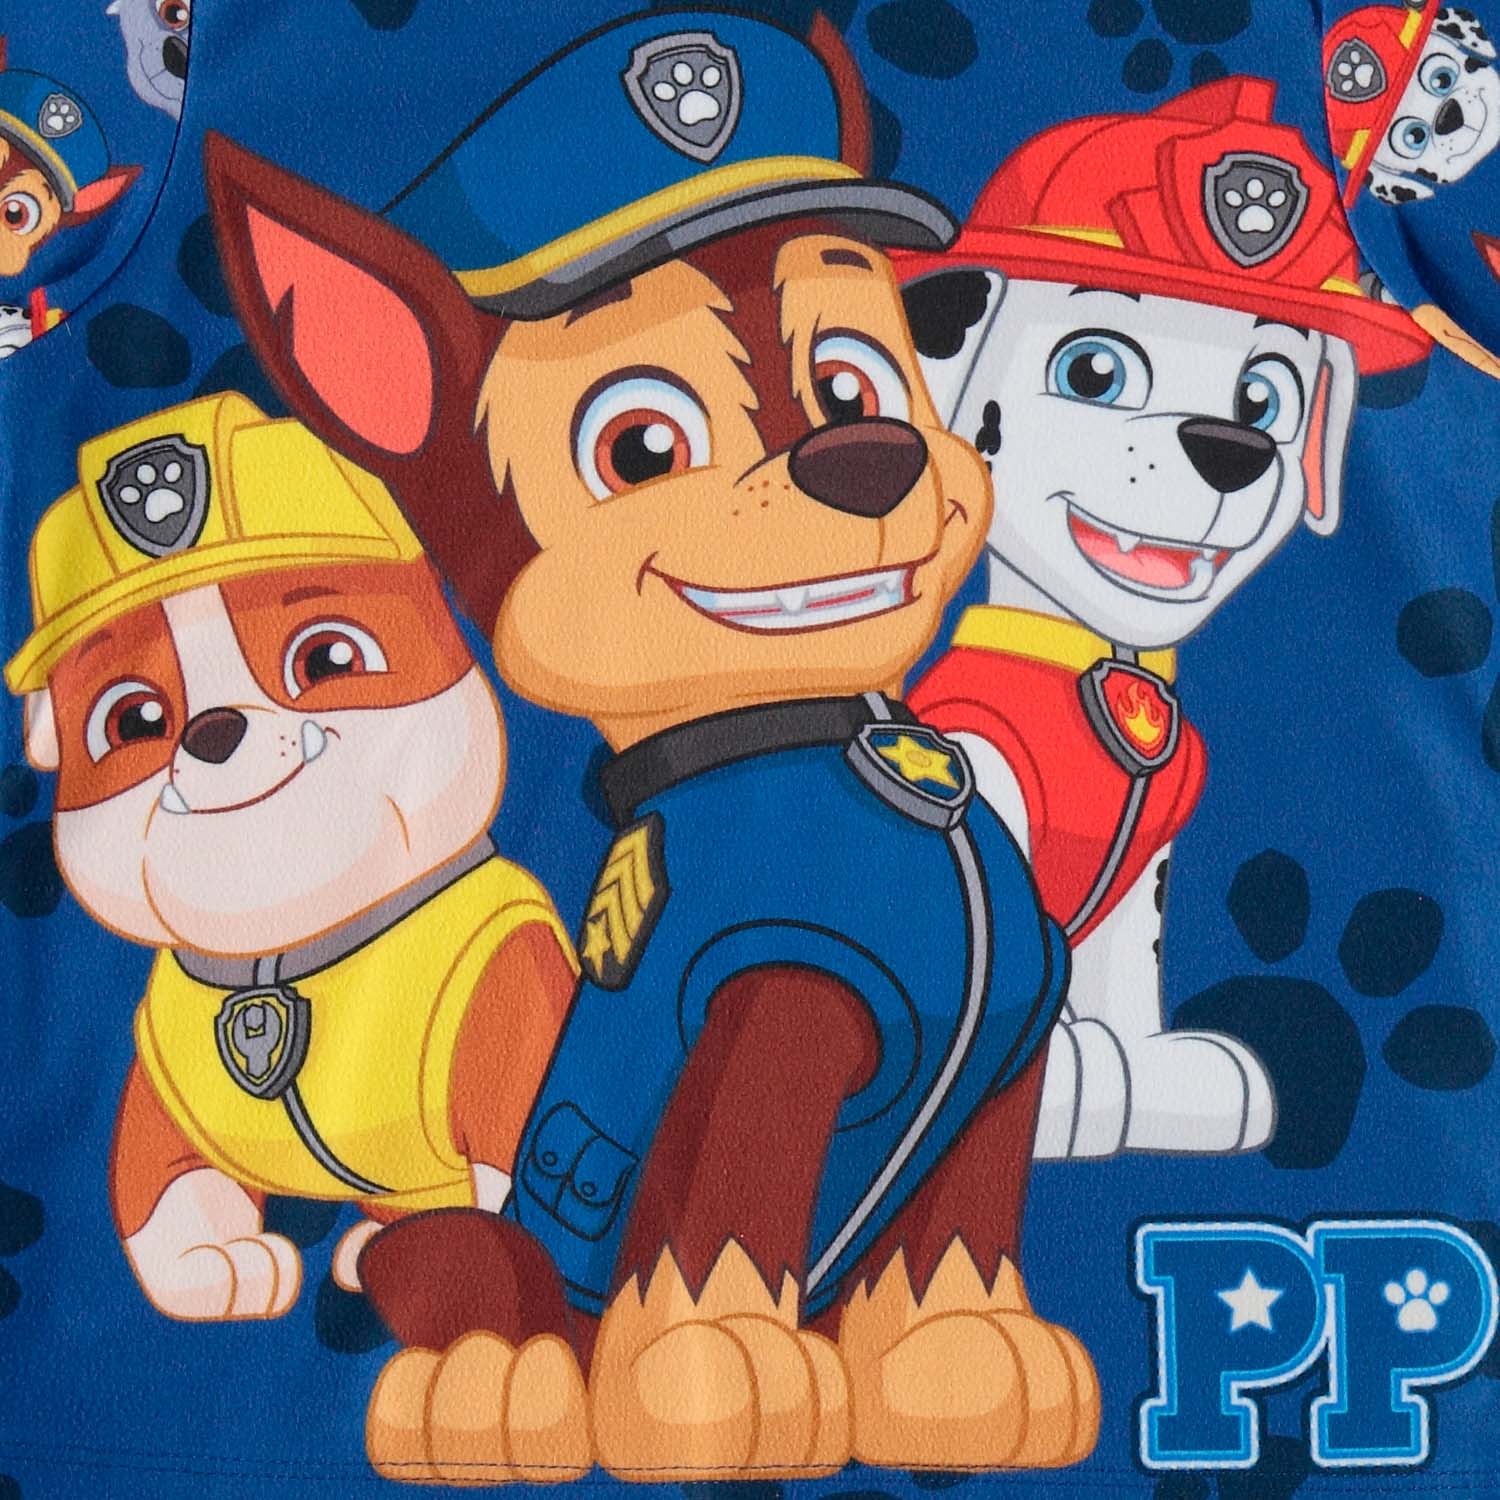 Pijama de Paw Patrol para niño, manga larga y pantalón largo de LittleMIC.  - Ropa infantil para niños y niñas de 4 a 15 años | Tienda Online MIC